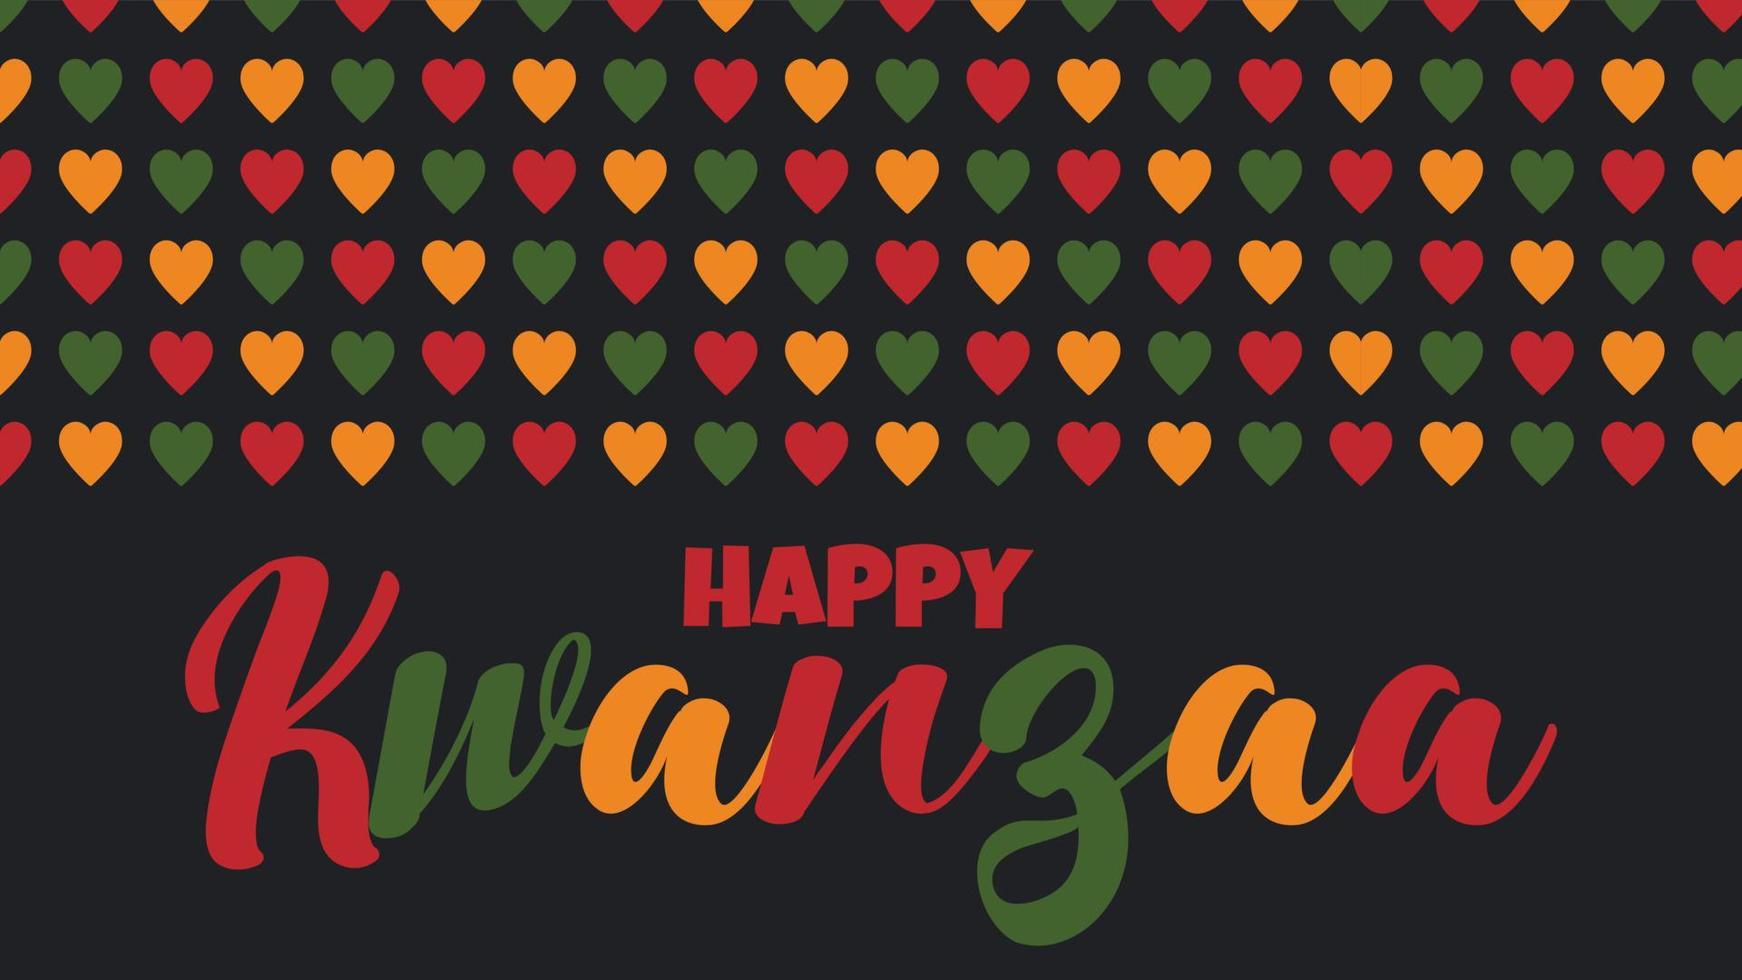 glad kwanzaa banner - afroamerikanskt firande i usa. vektorillustration med text, kantmönster med hjärtan i traditionella afrikanska färger - grönt, rött, gult på svart. gratulationskort vektor